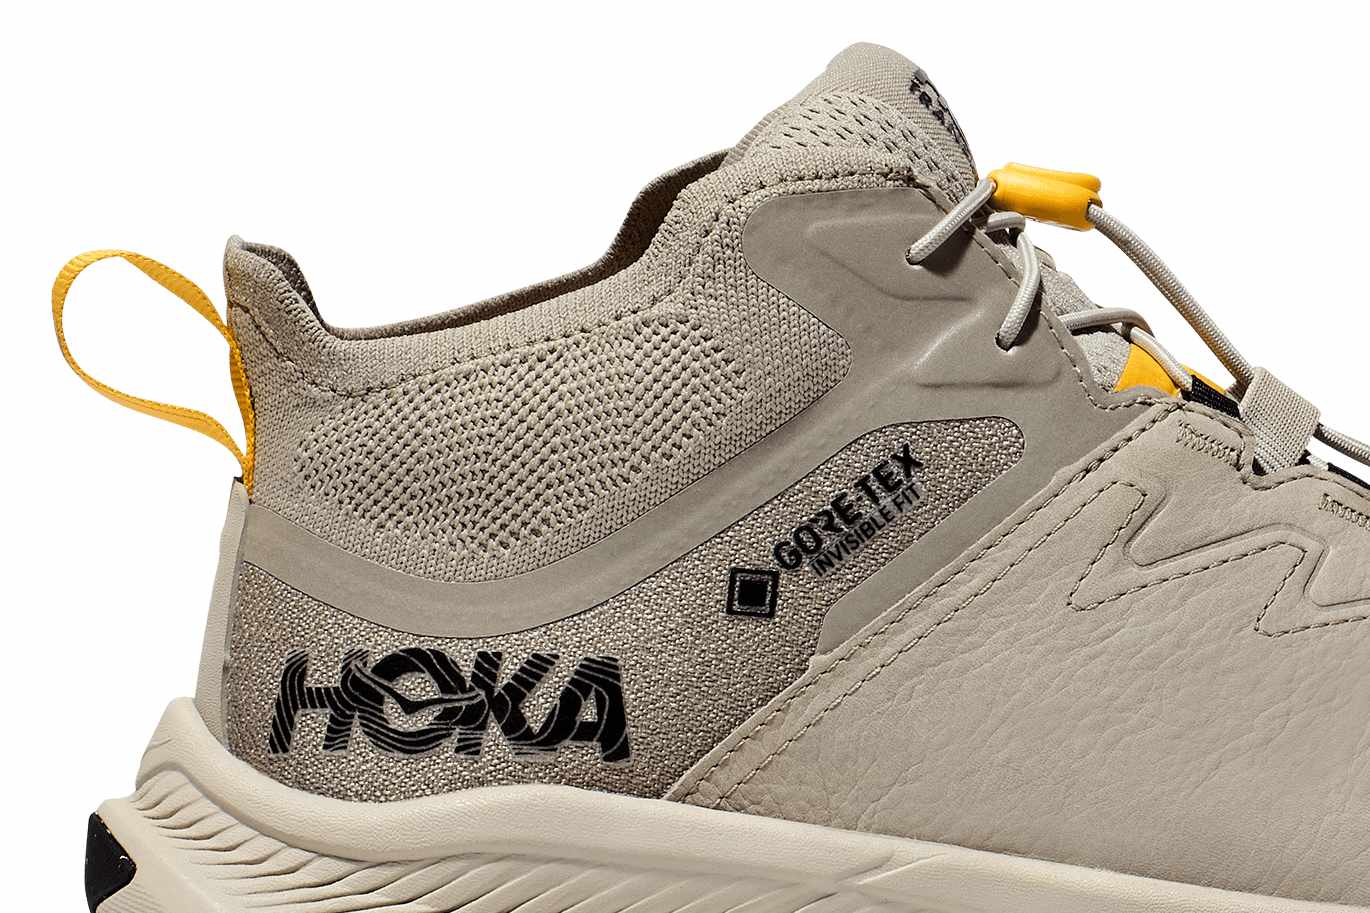 HOKA's Transport GTX sneaker in beige nubuck leather